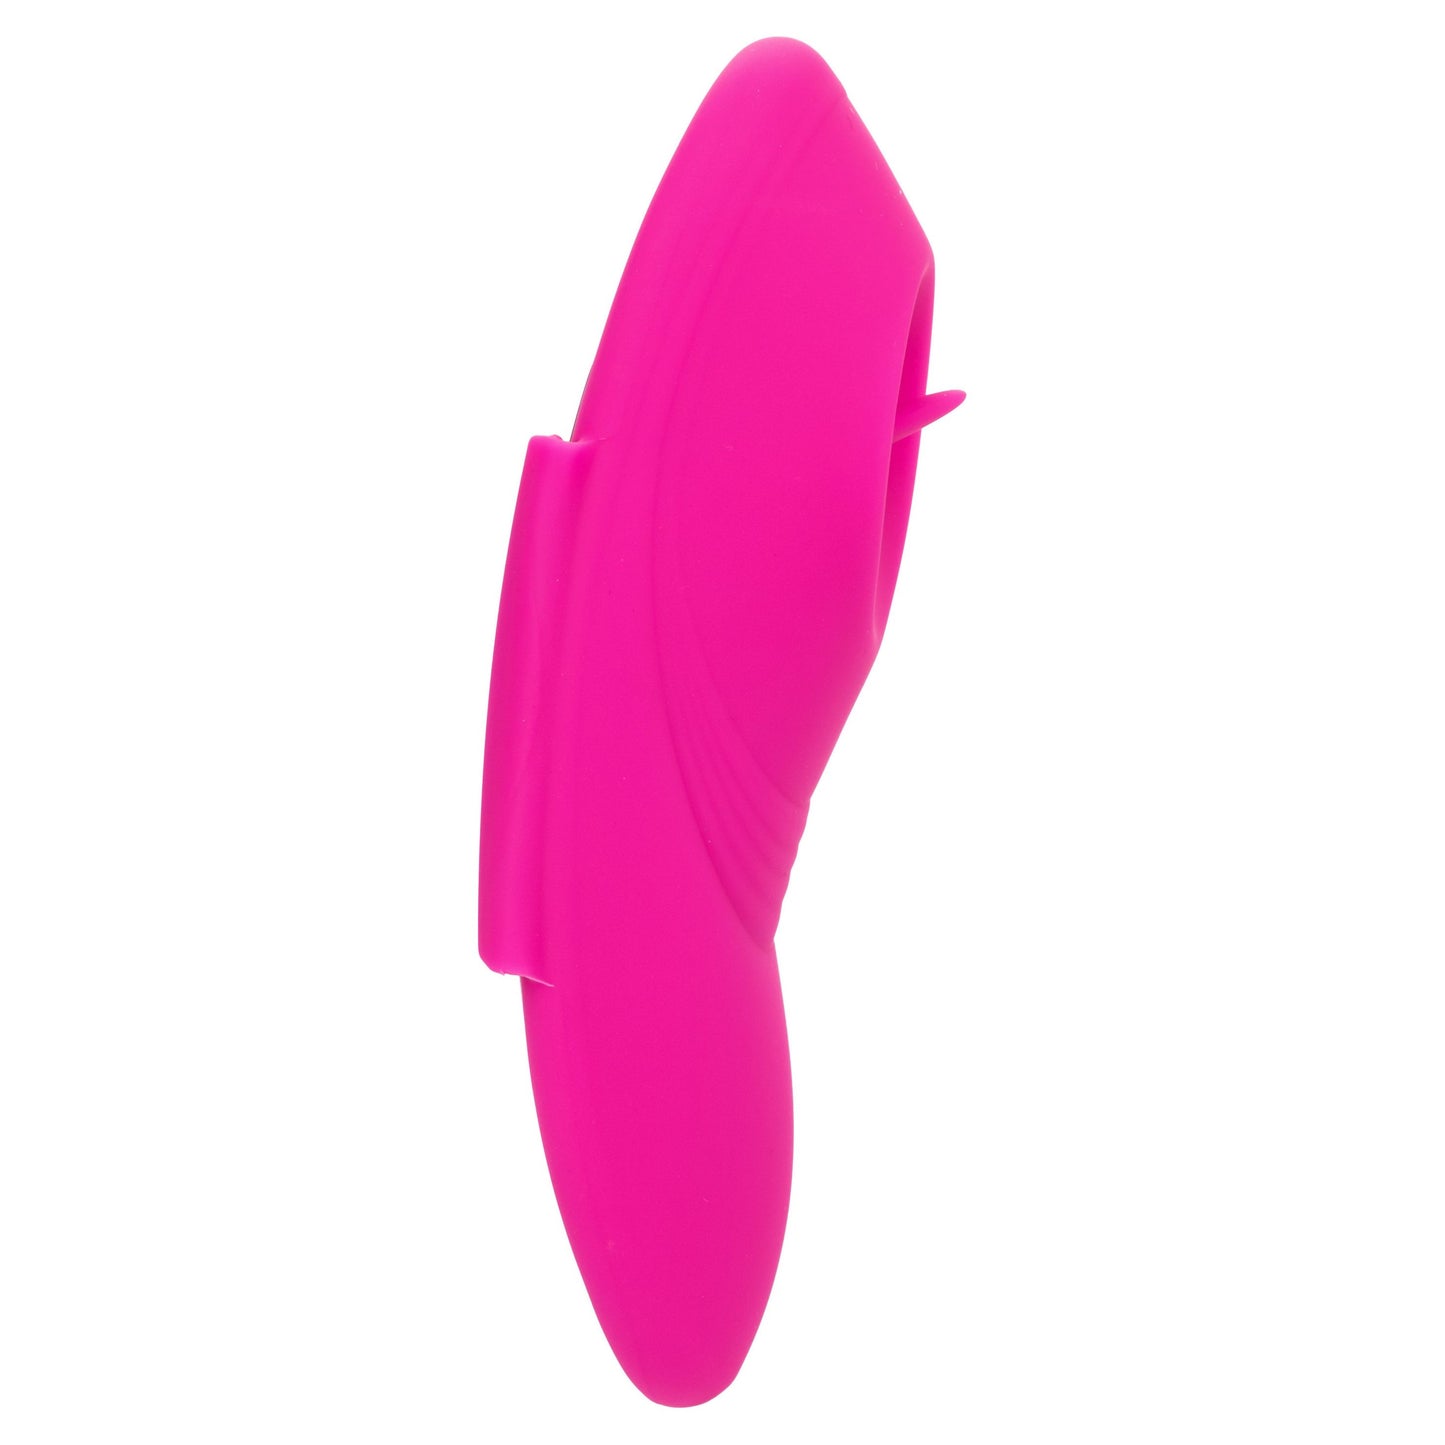 Lock-N-Play Remote Flicker Panty Teaser - Pink